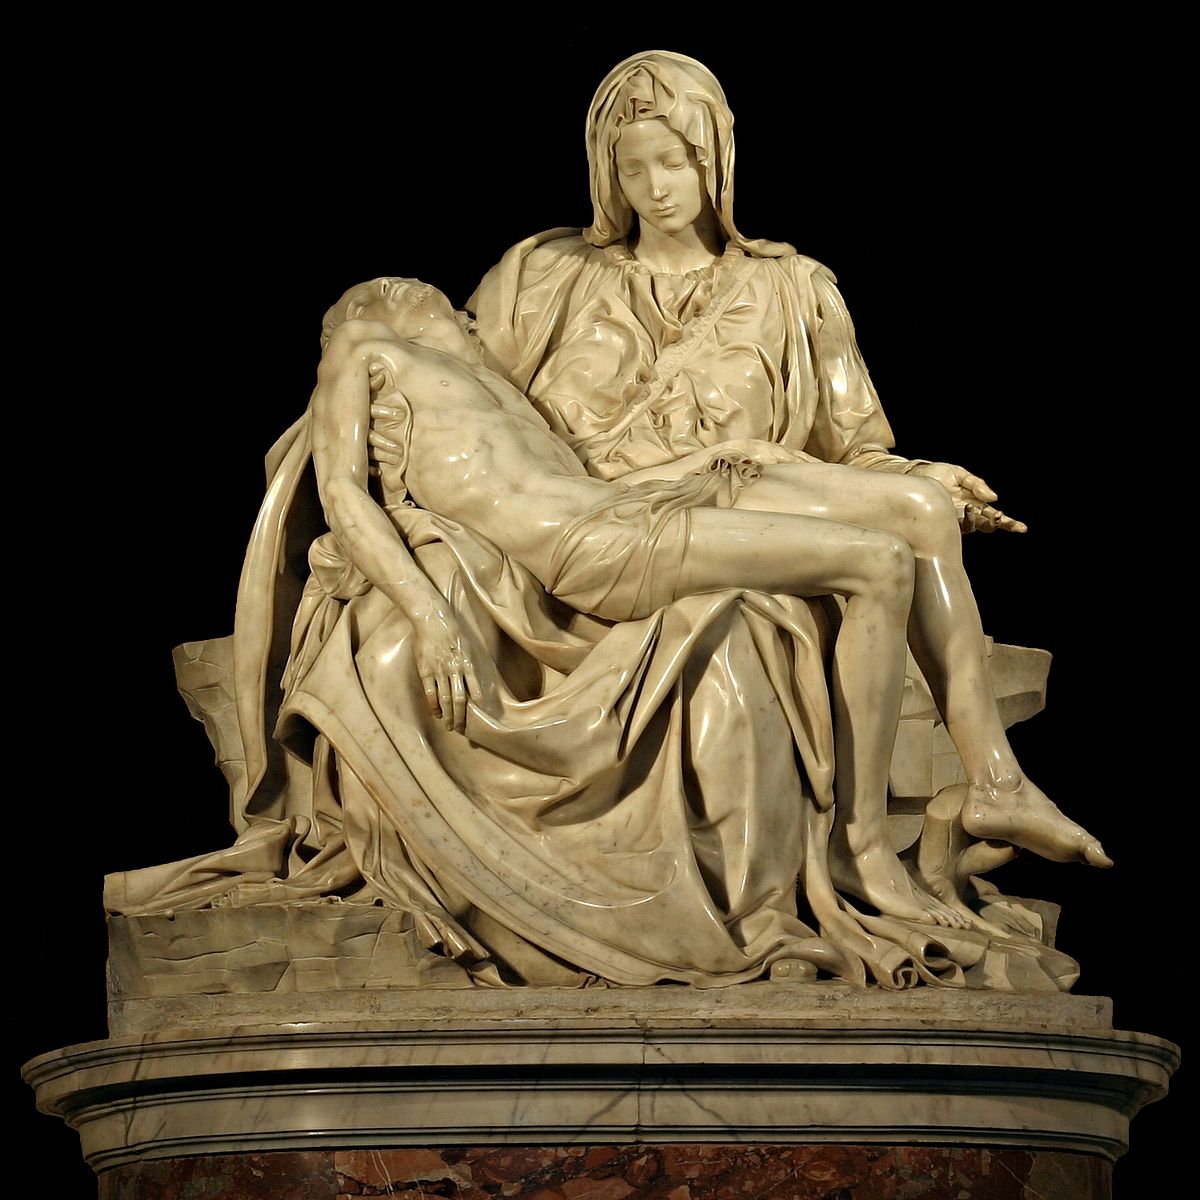 Pietà (Michelangelo) - Wikipedia